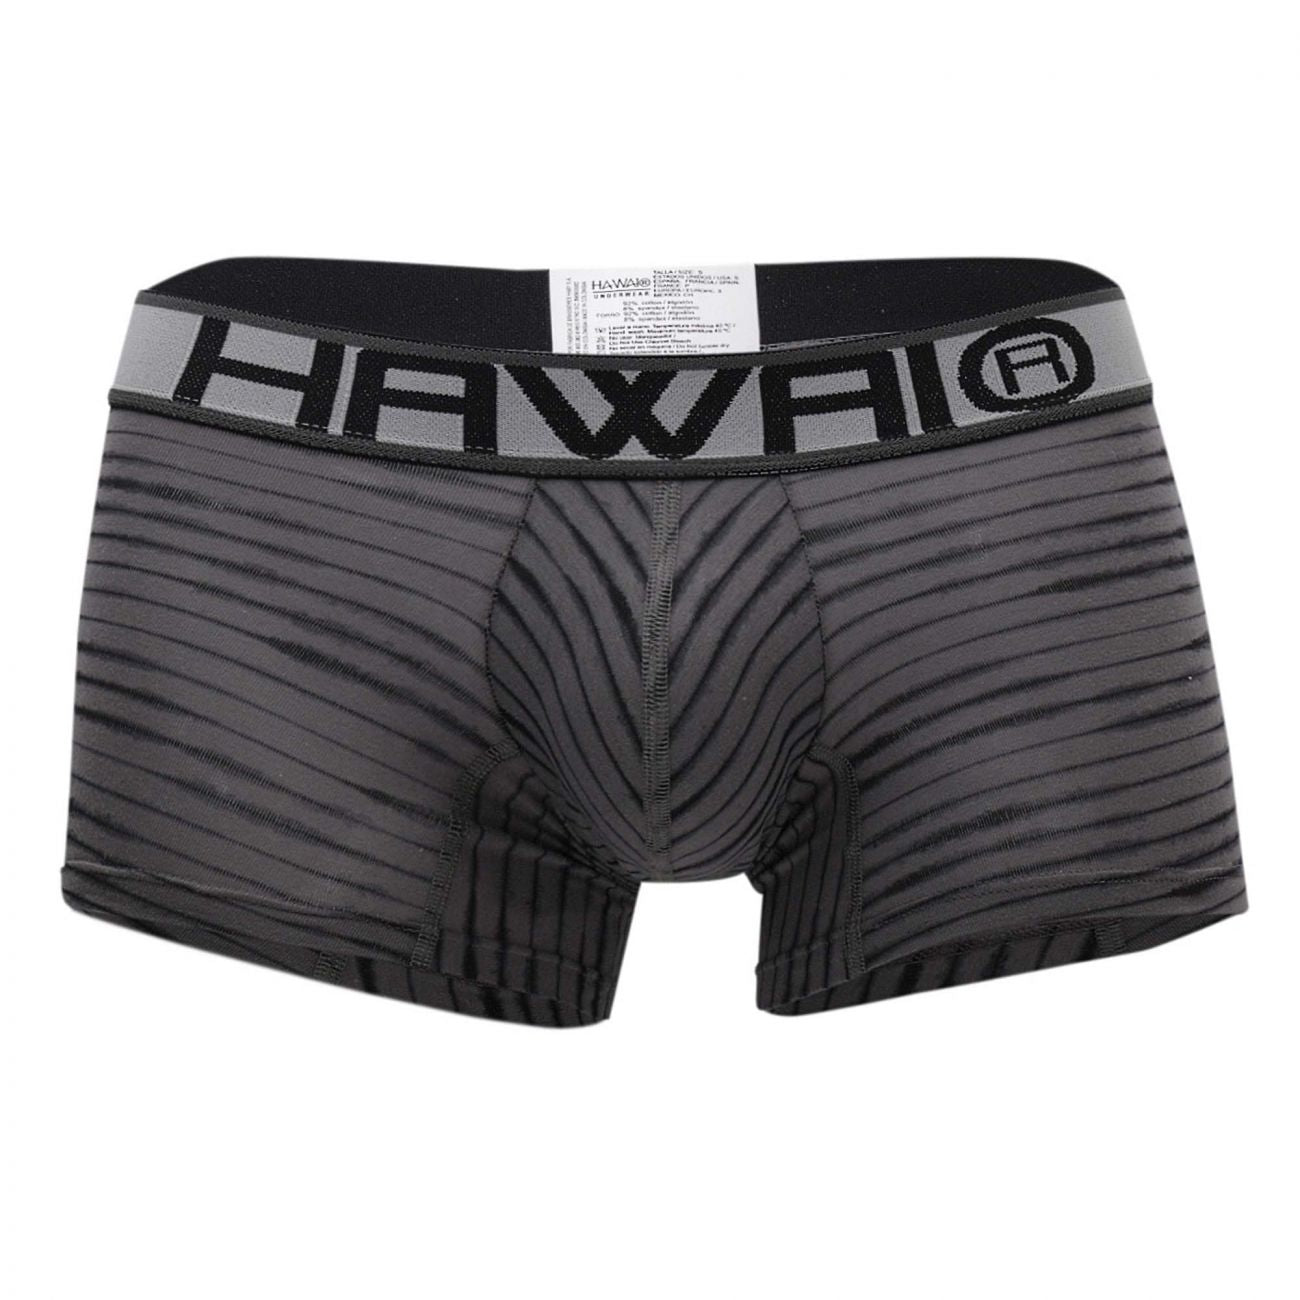 HAWAI 41972 Boxer Briefs Gray